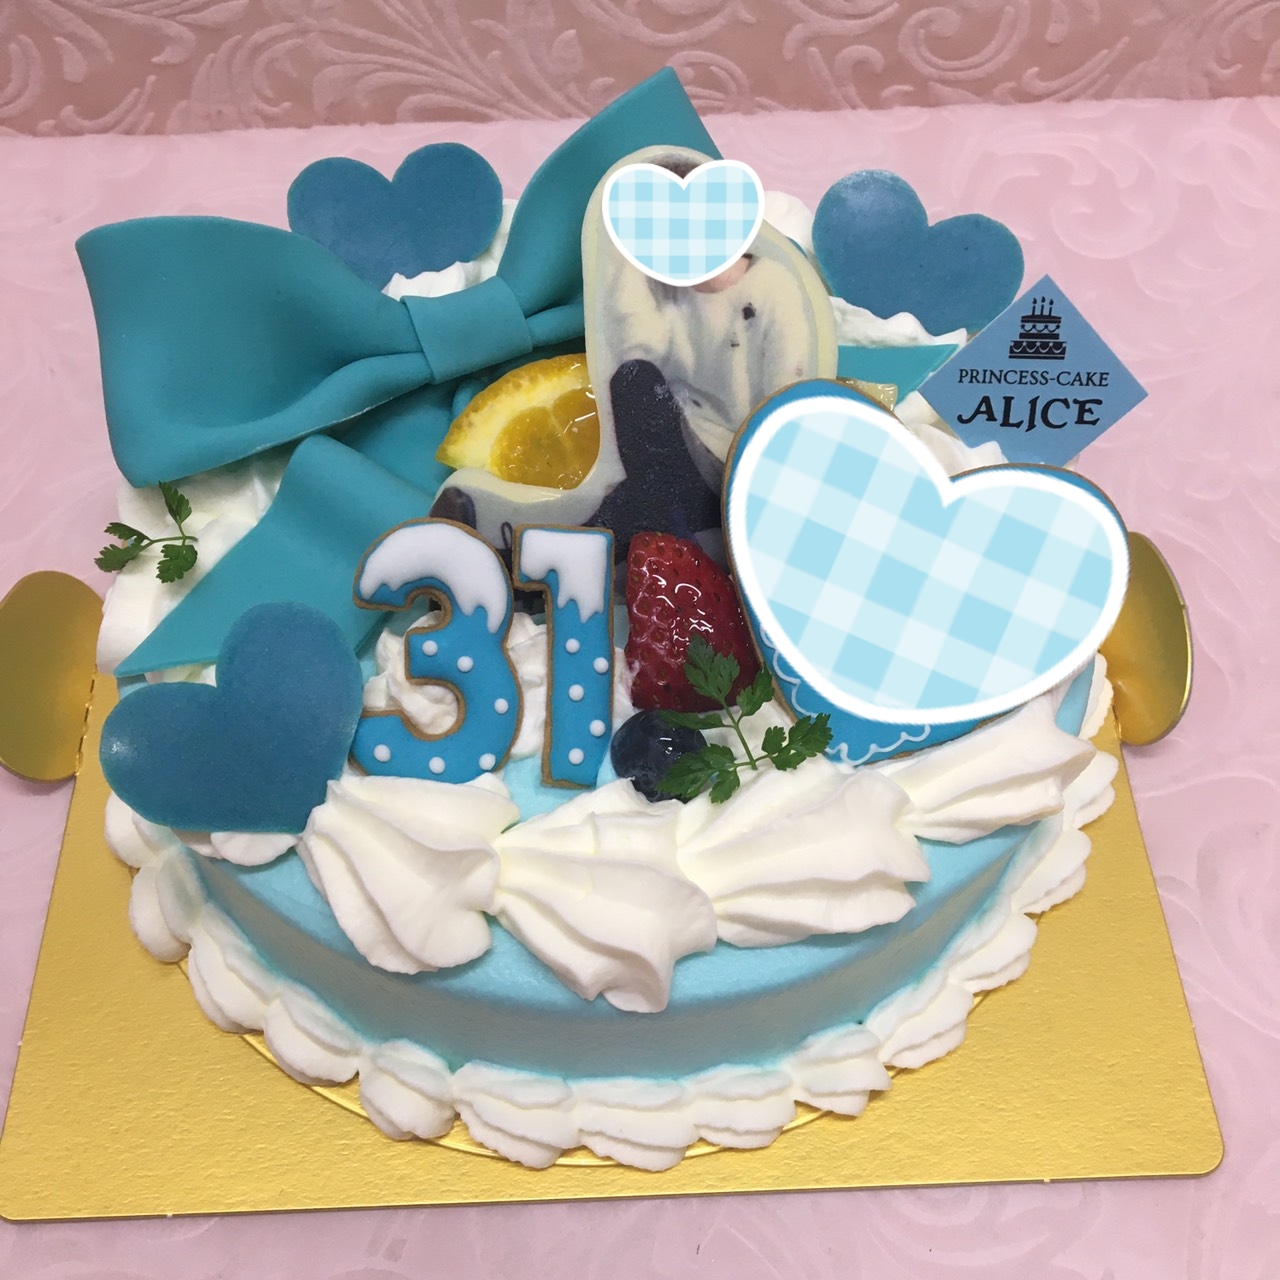 リボンのオーダーケーキ 大阪でオーダーケーキなら大阪ミナミ なんば 心斎橋の宅配ケーキ プリンセスケーキアリス